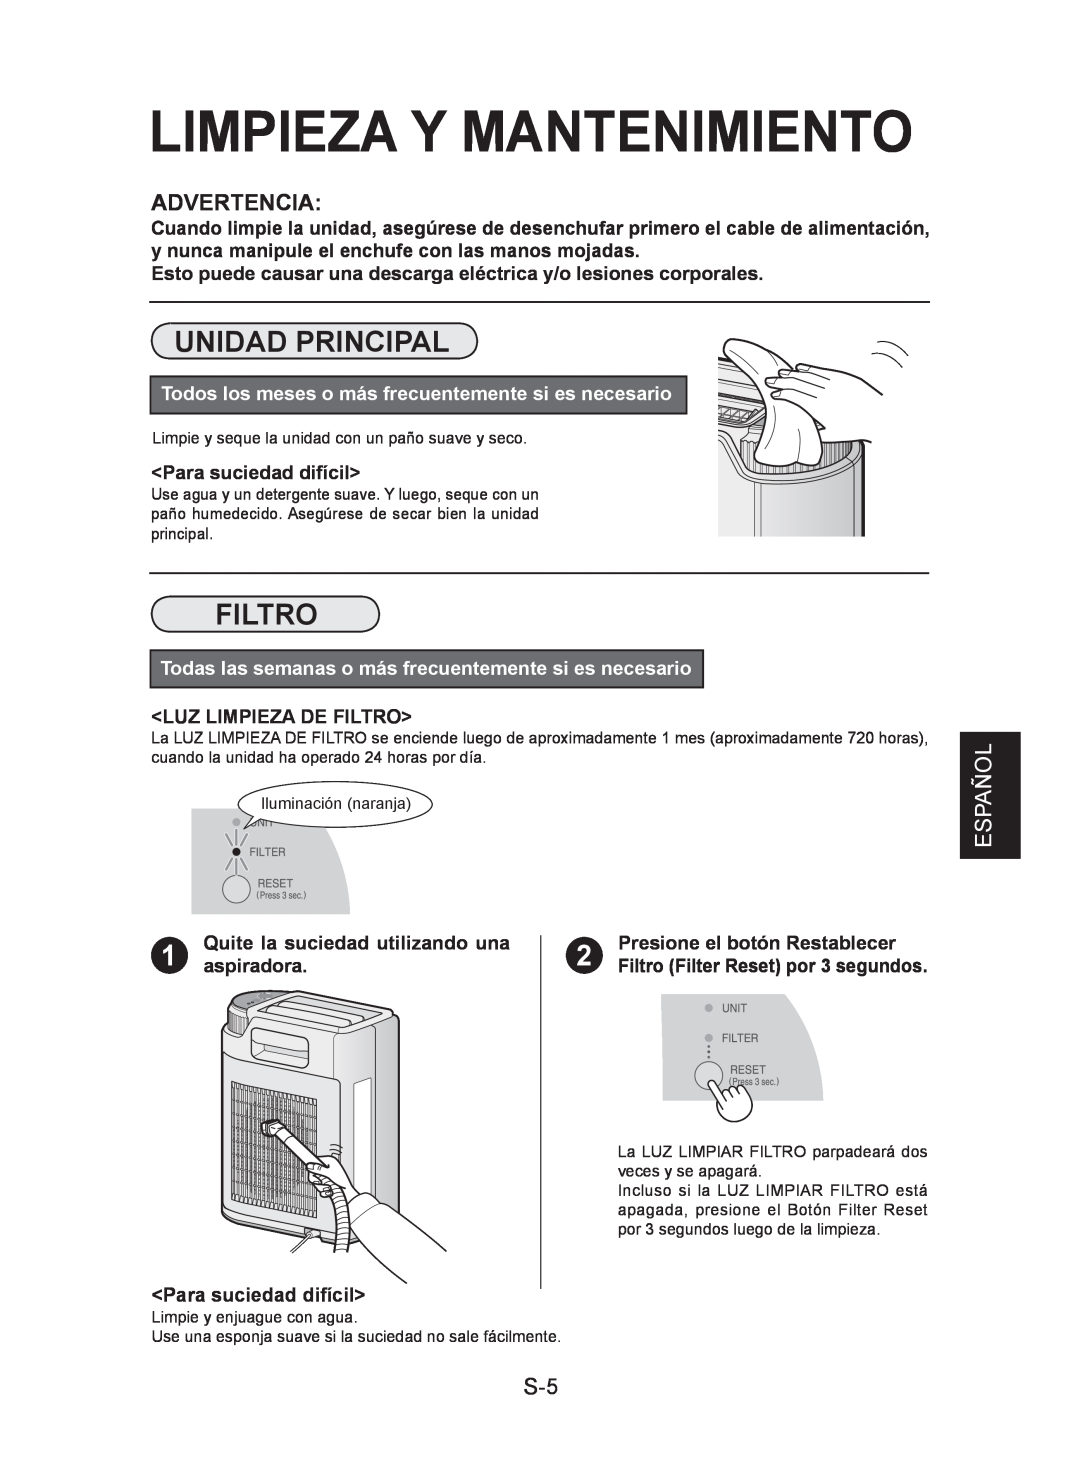 Sharp IG-CL15U operation manual Limpieza Y Mantenimiento, Unidad Principal, Filtro, Advertencia, Español 